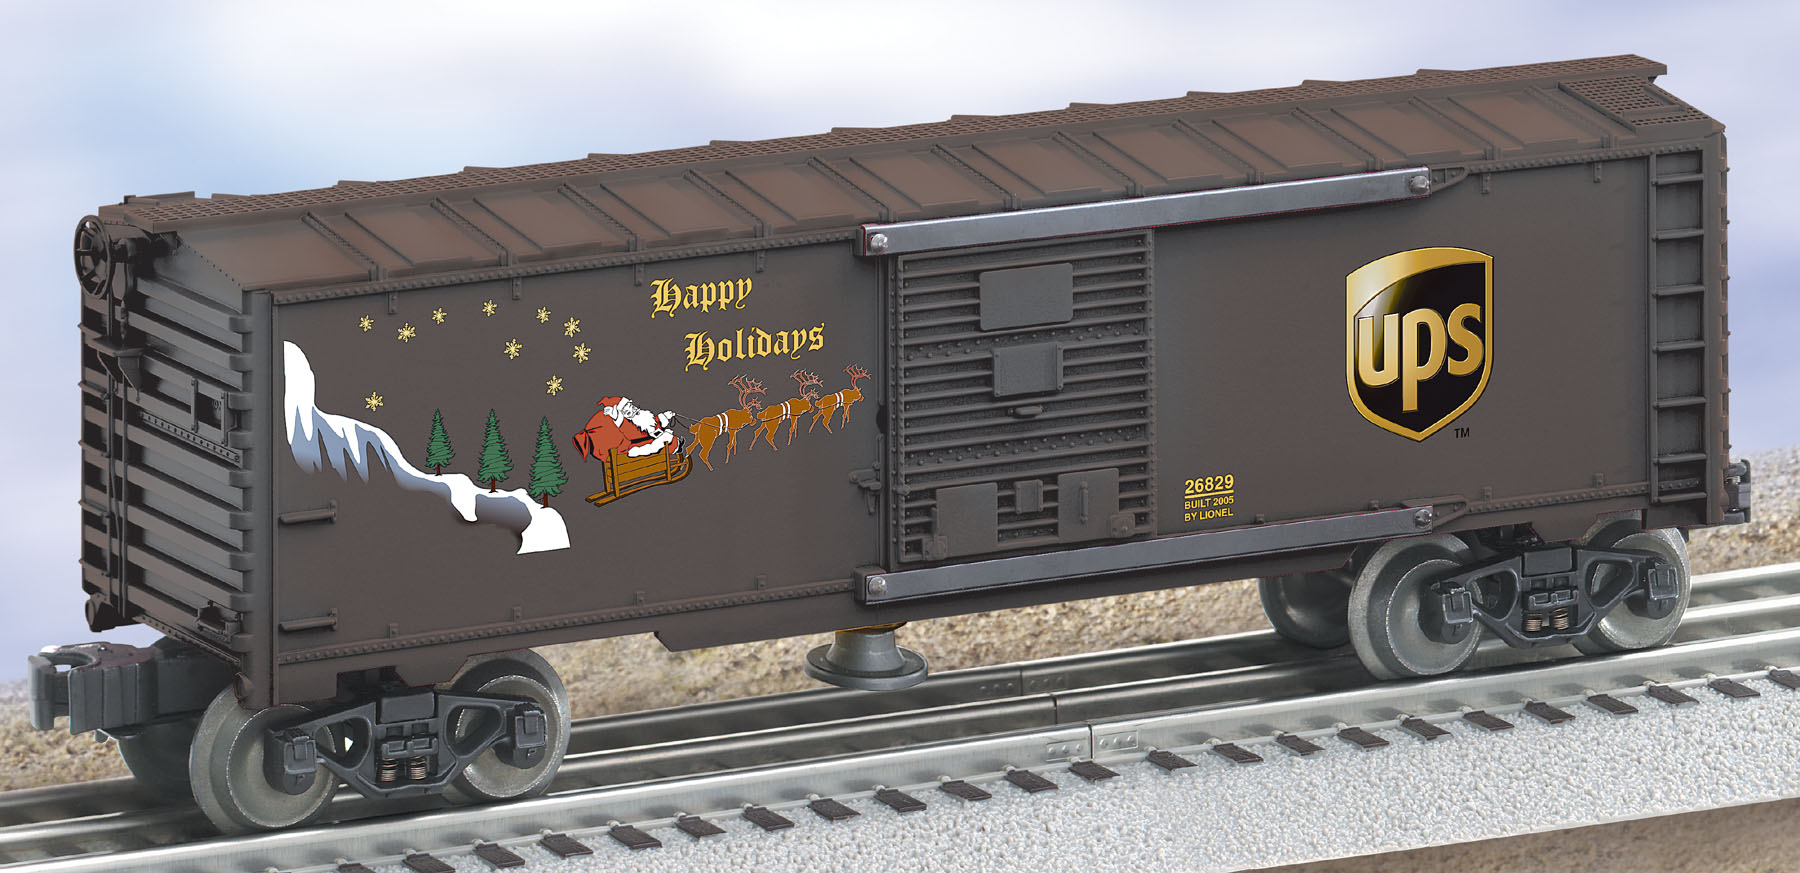 UPS® Holiday Operating Boxcar image